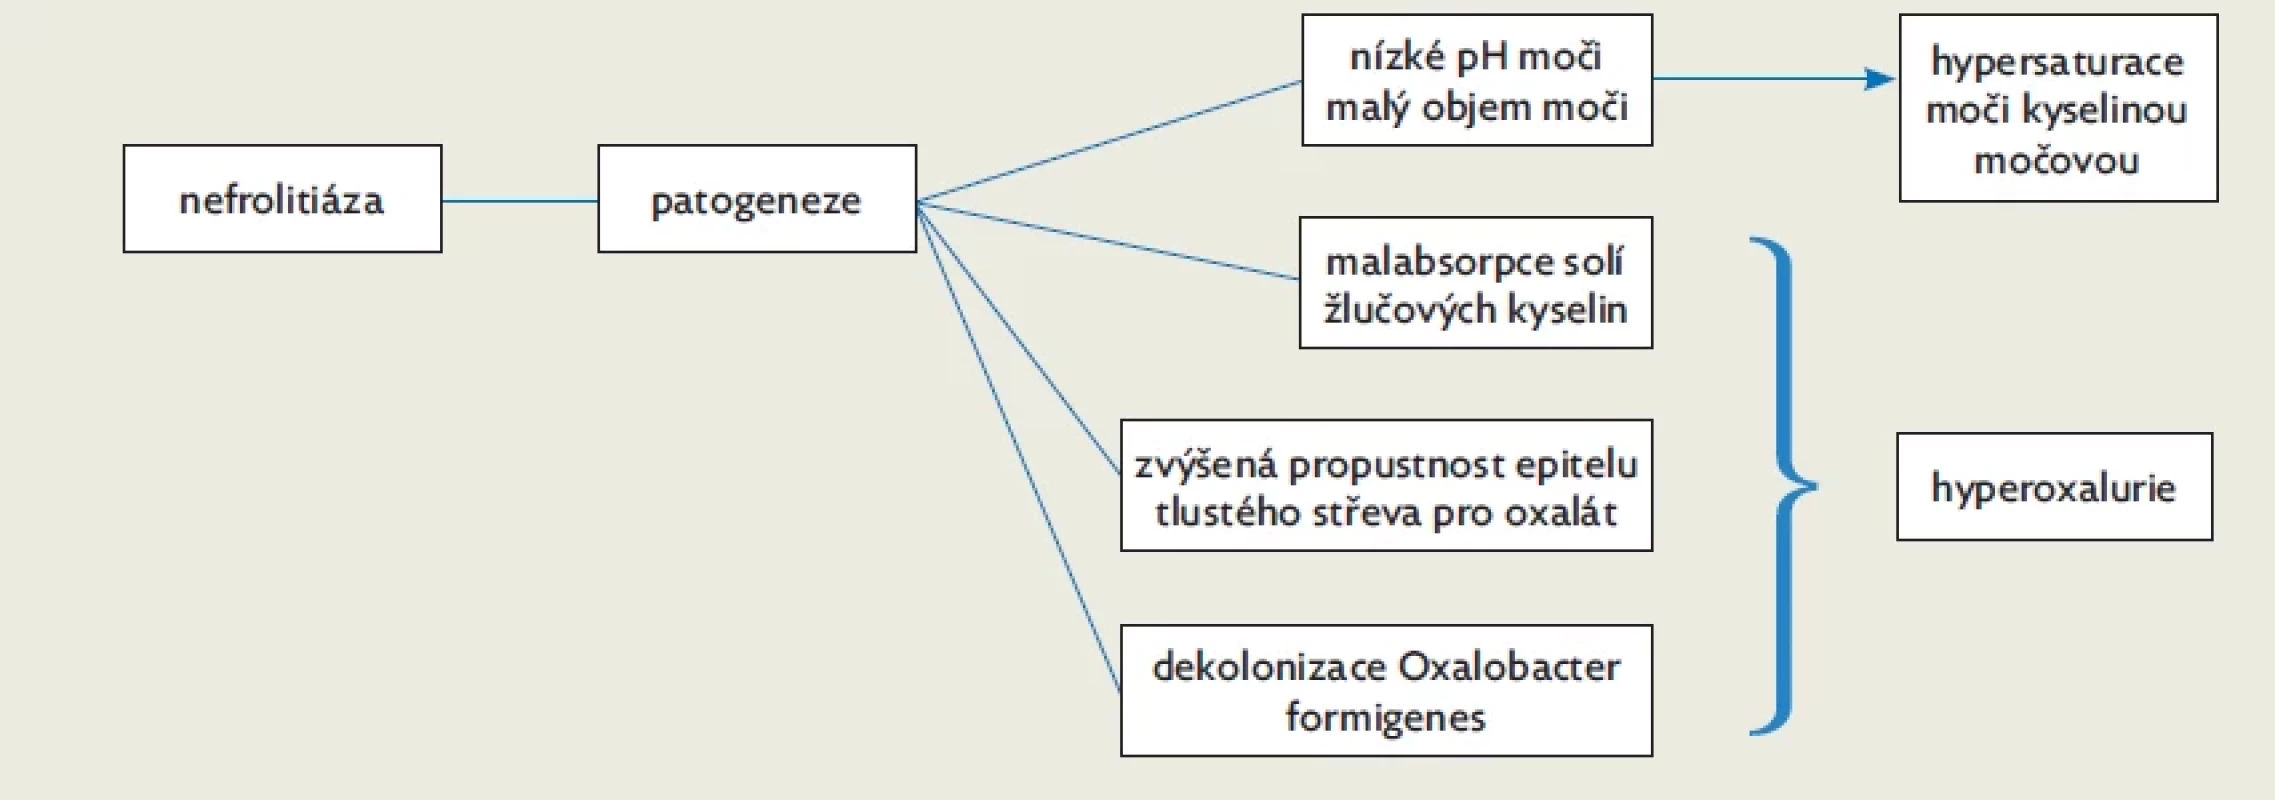 Patogeneze nefrolitiázy u pacientů s IIBD, upraveno dle(17)